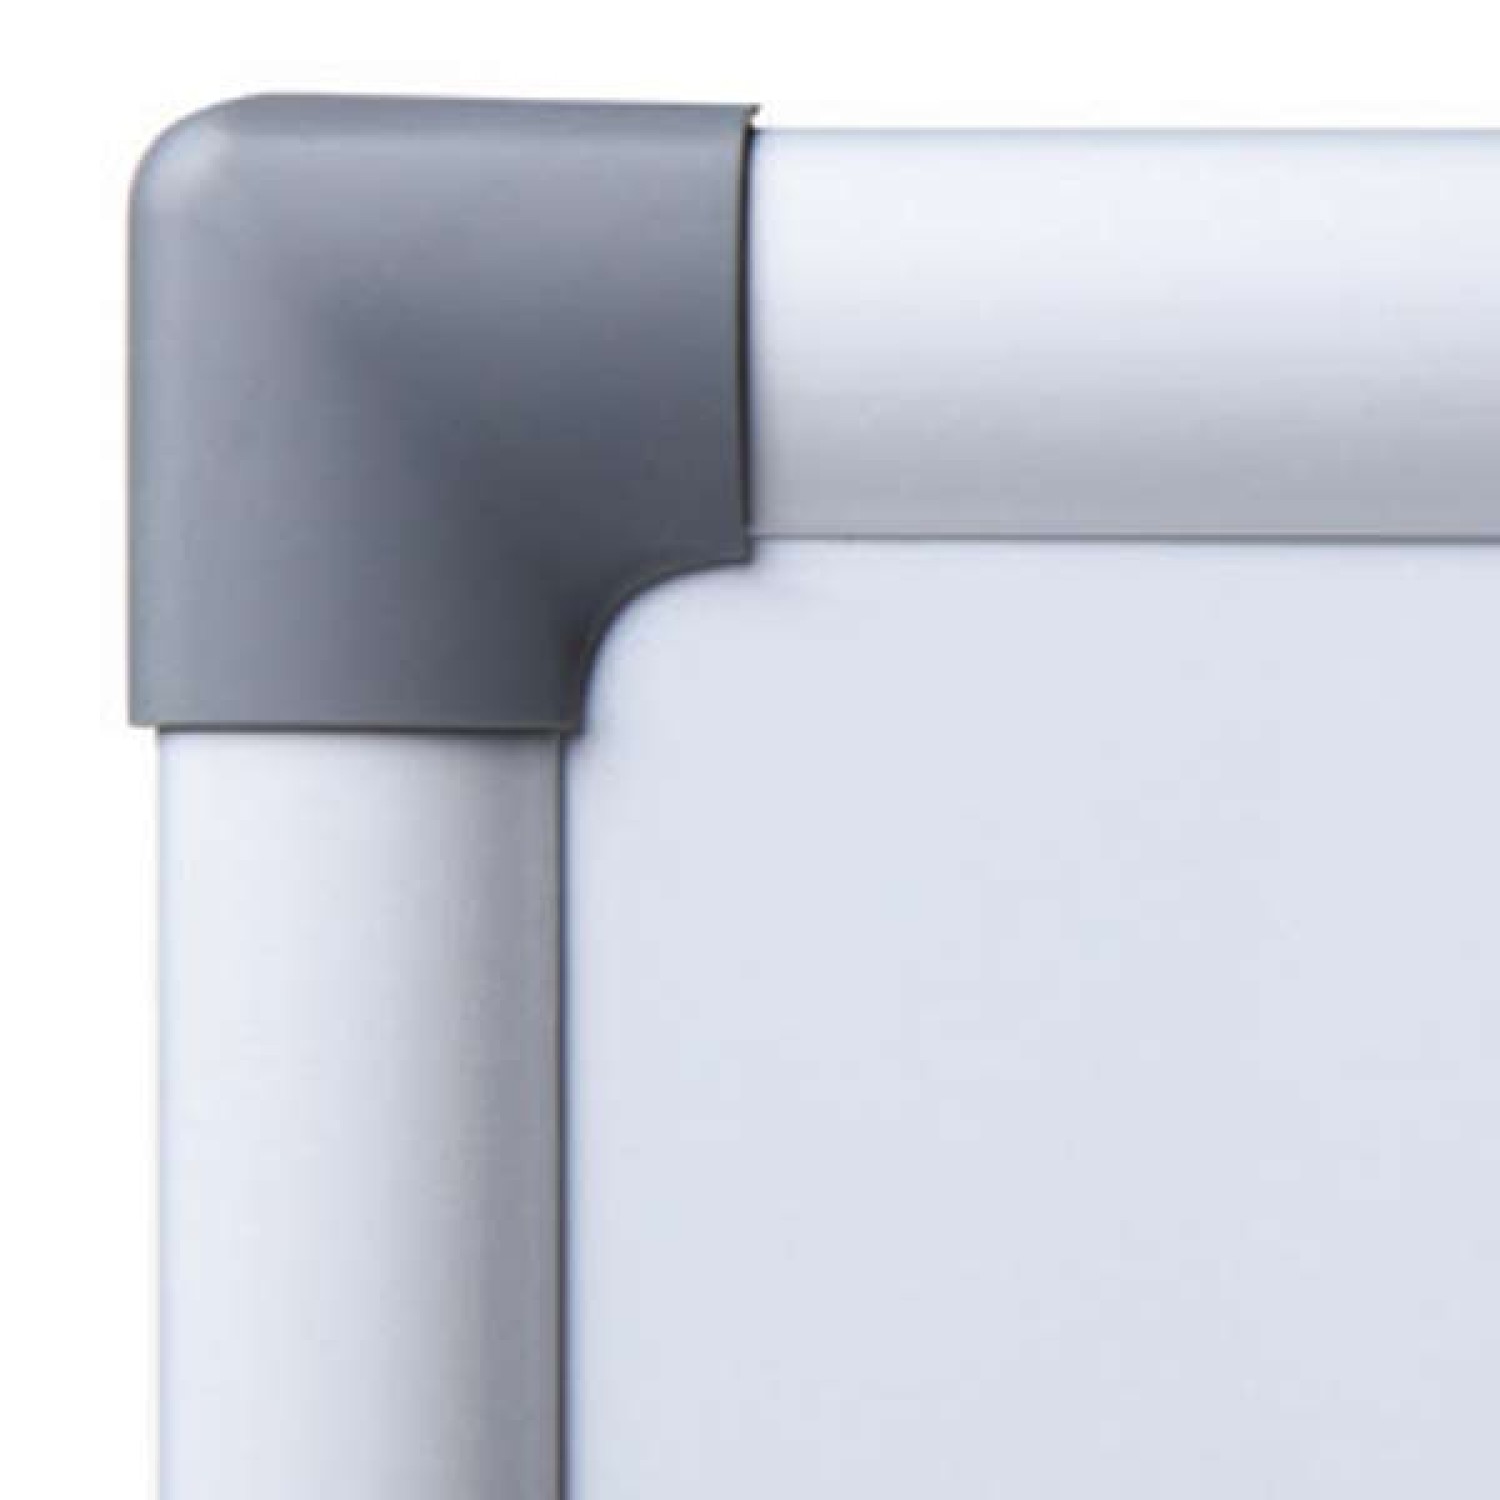 2. Foto Whiteboard mit schutzlackierter Stahloberfläche magnethaftend beschreibbar mit Stiftablage (Größe: 60 x 45 cm)